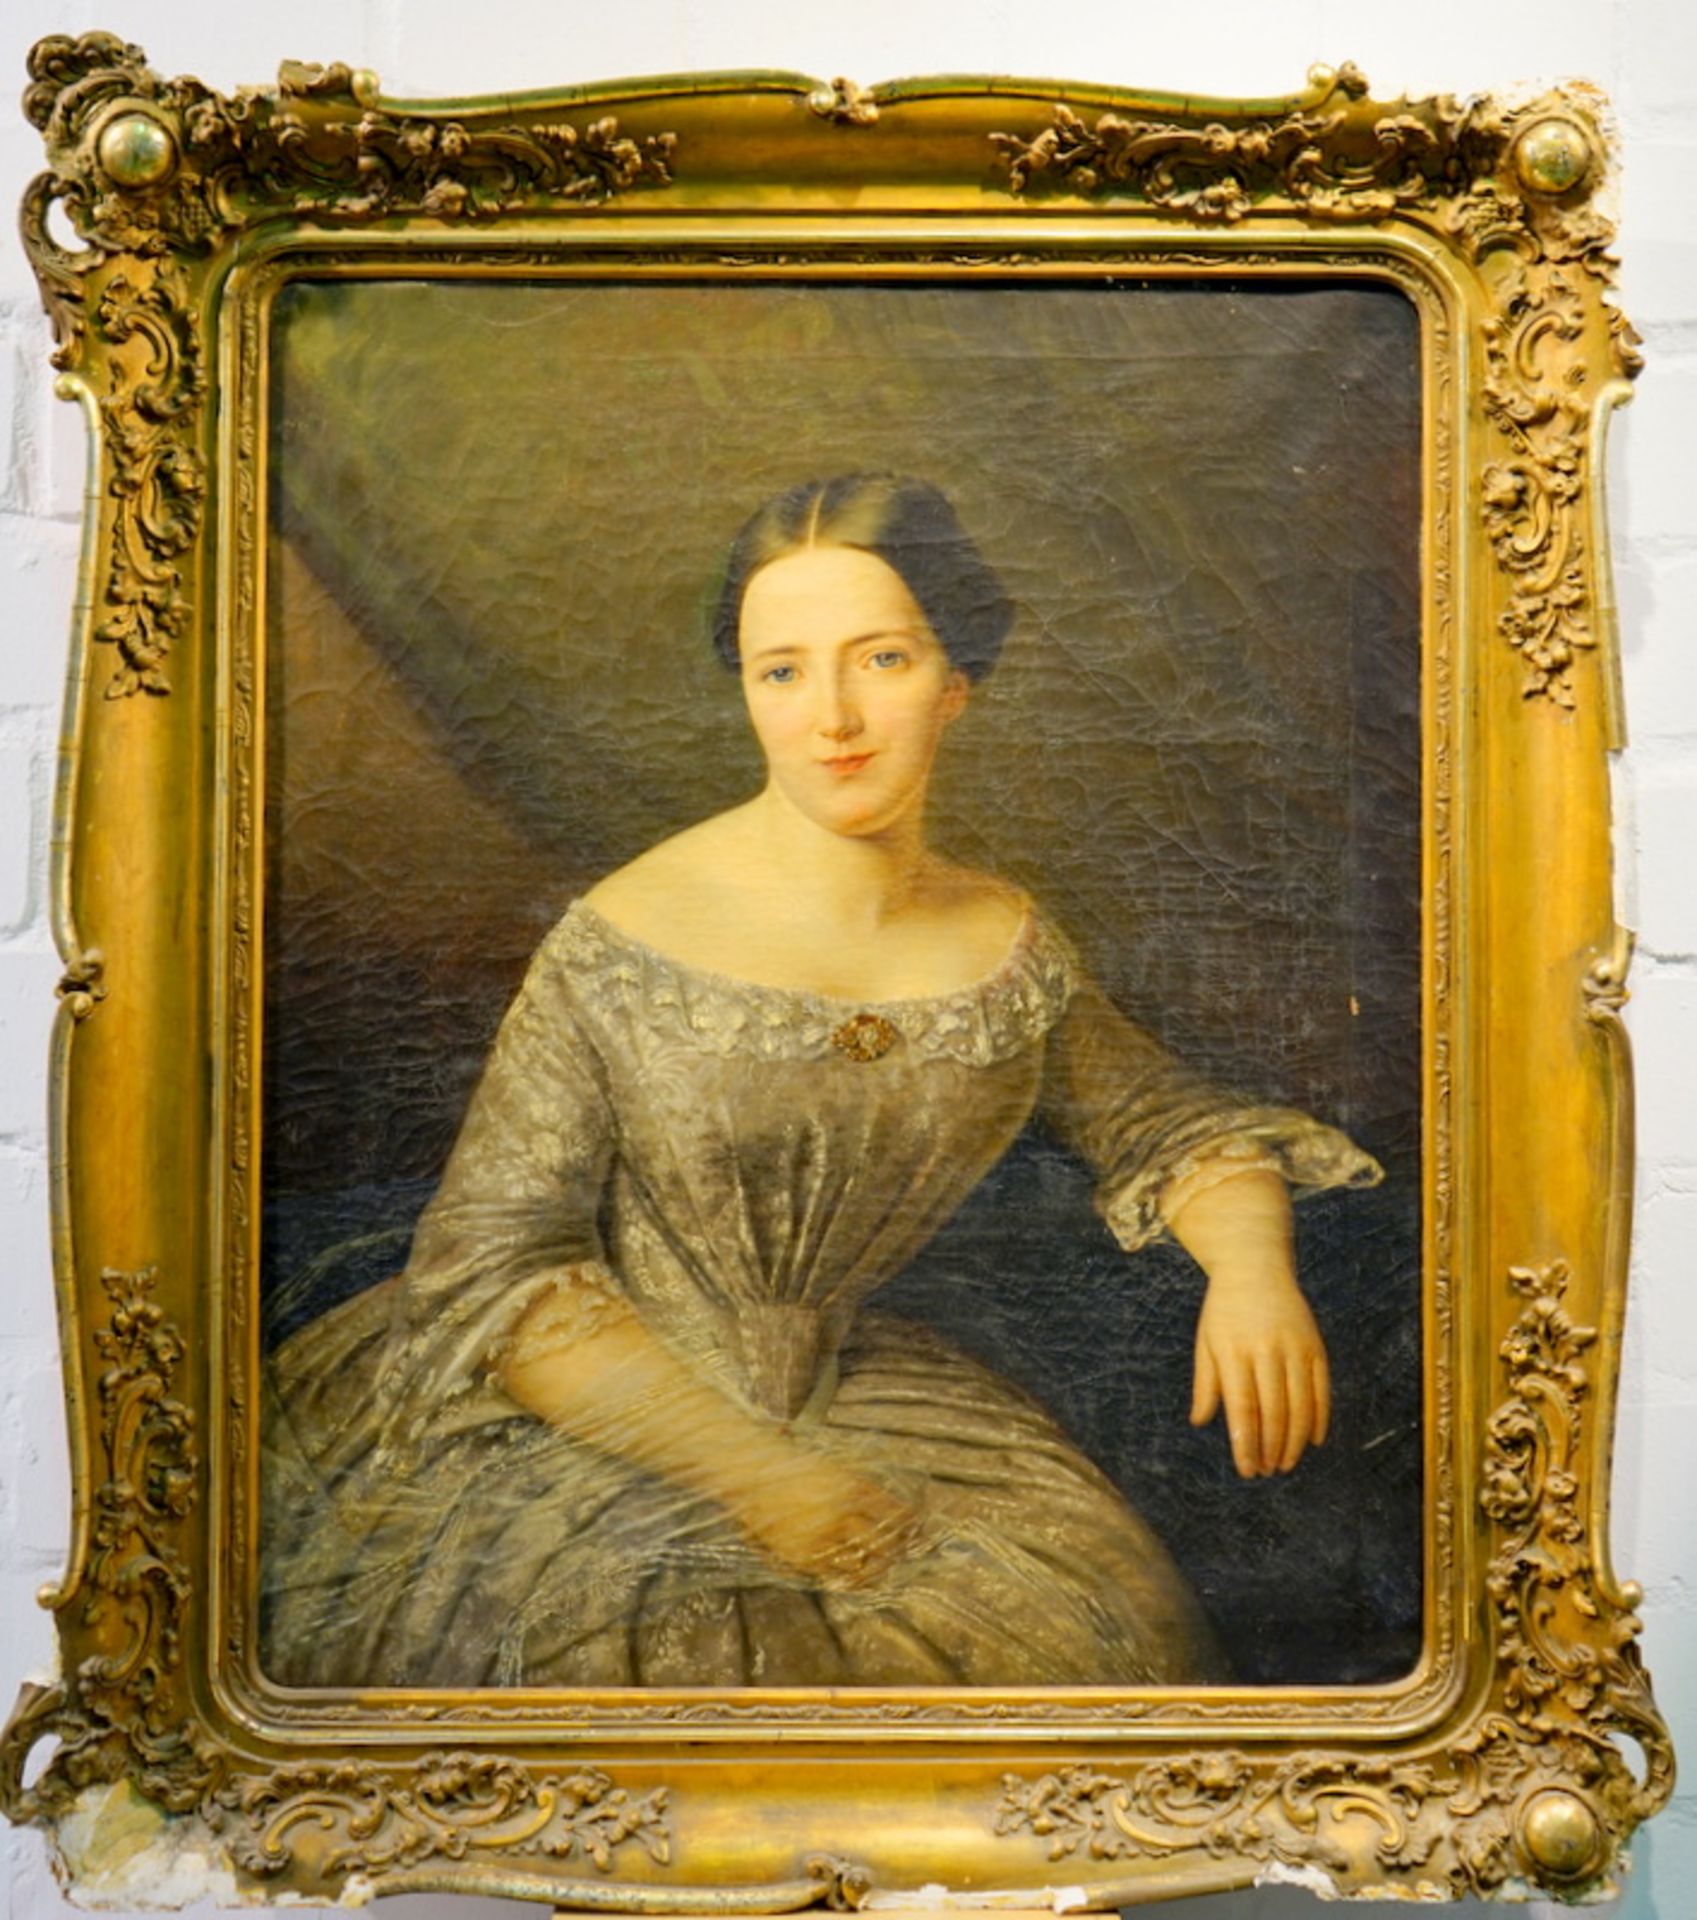 Großes Ehebildnis einer Dame, 19. Jhd.,großformatiges Halbfigurenporträt einer sitztenden Dame in